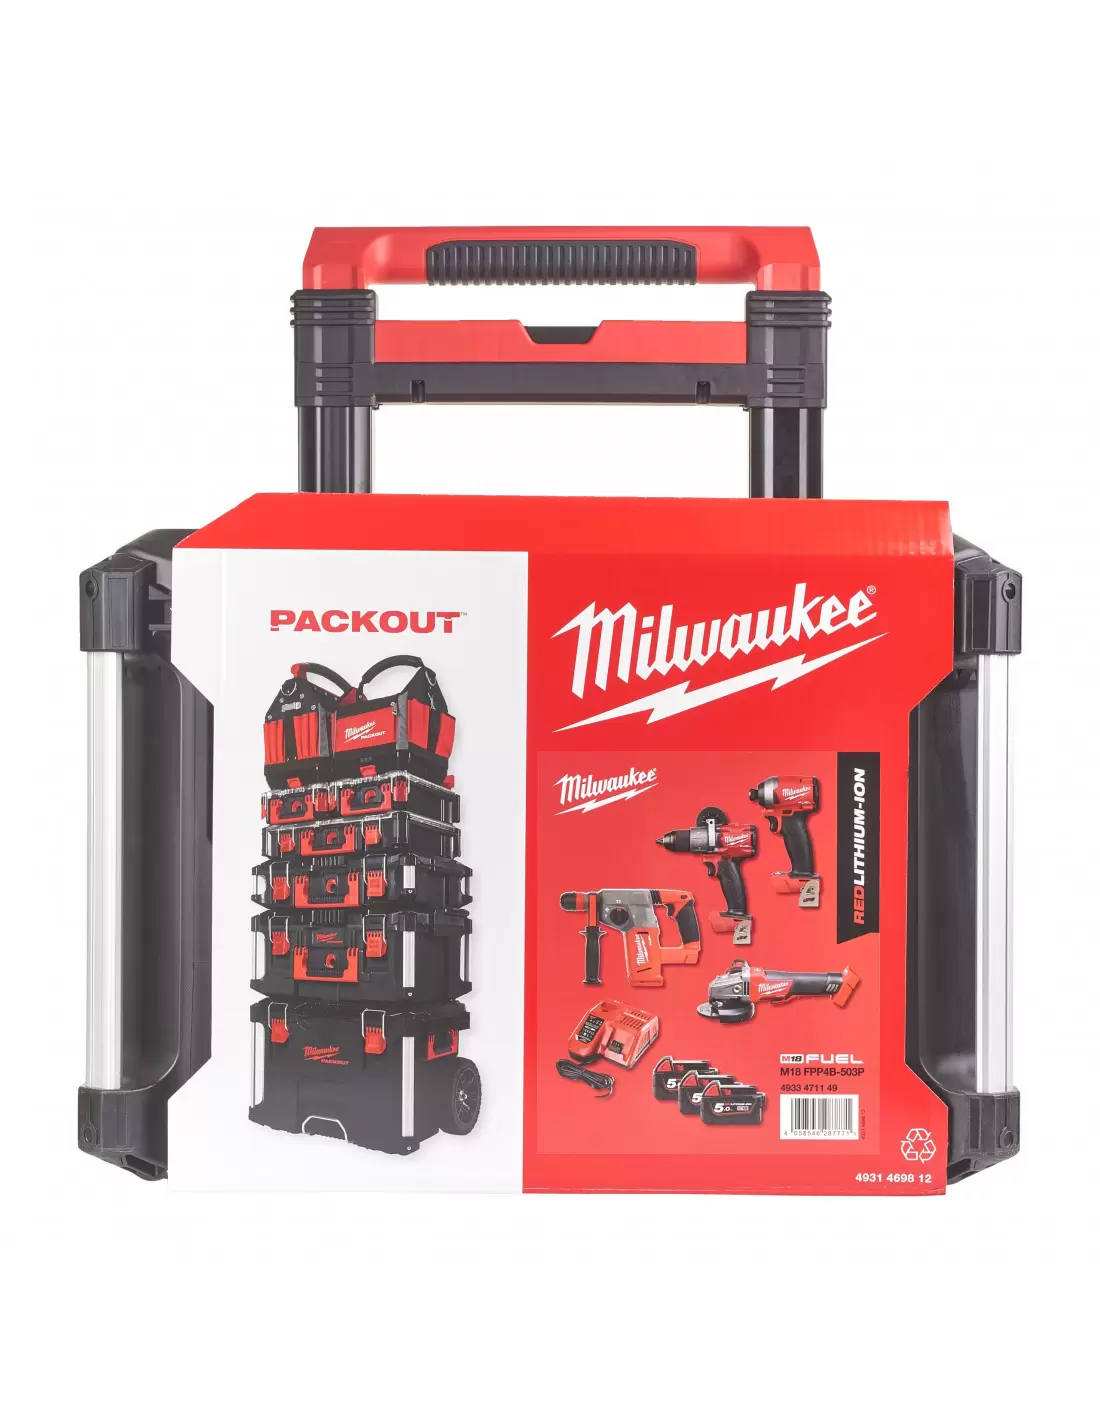 Pack 4 outils sans fil avec 3 batteries, chargeur, en coffret - Milwaukee  M18 FPP4AE-533P - Outils Pro